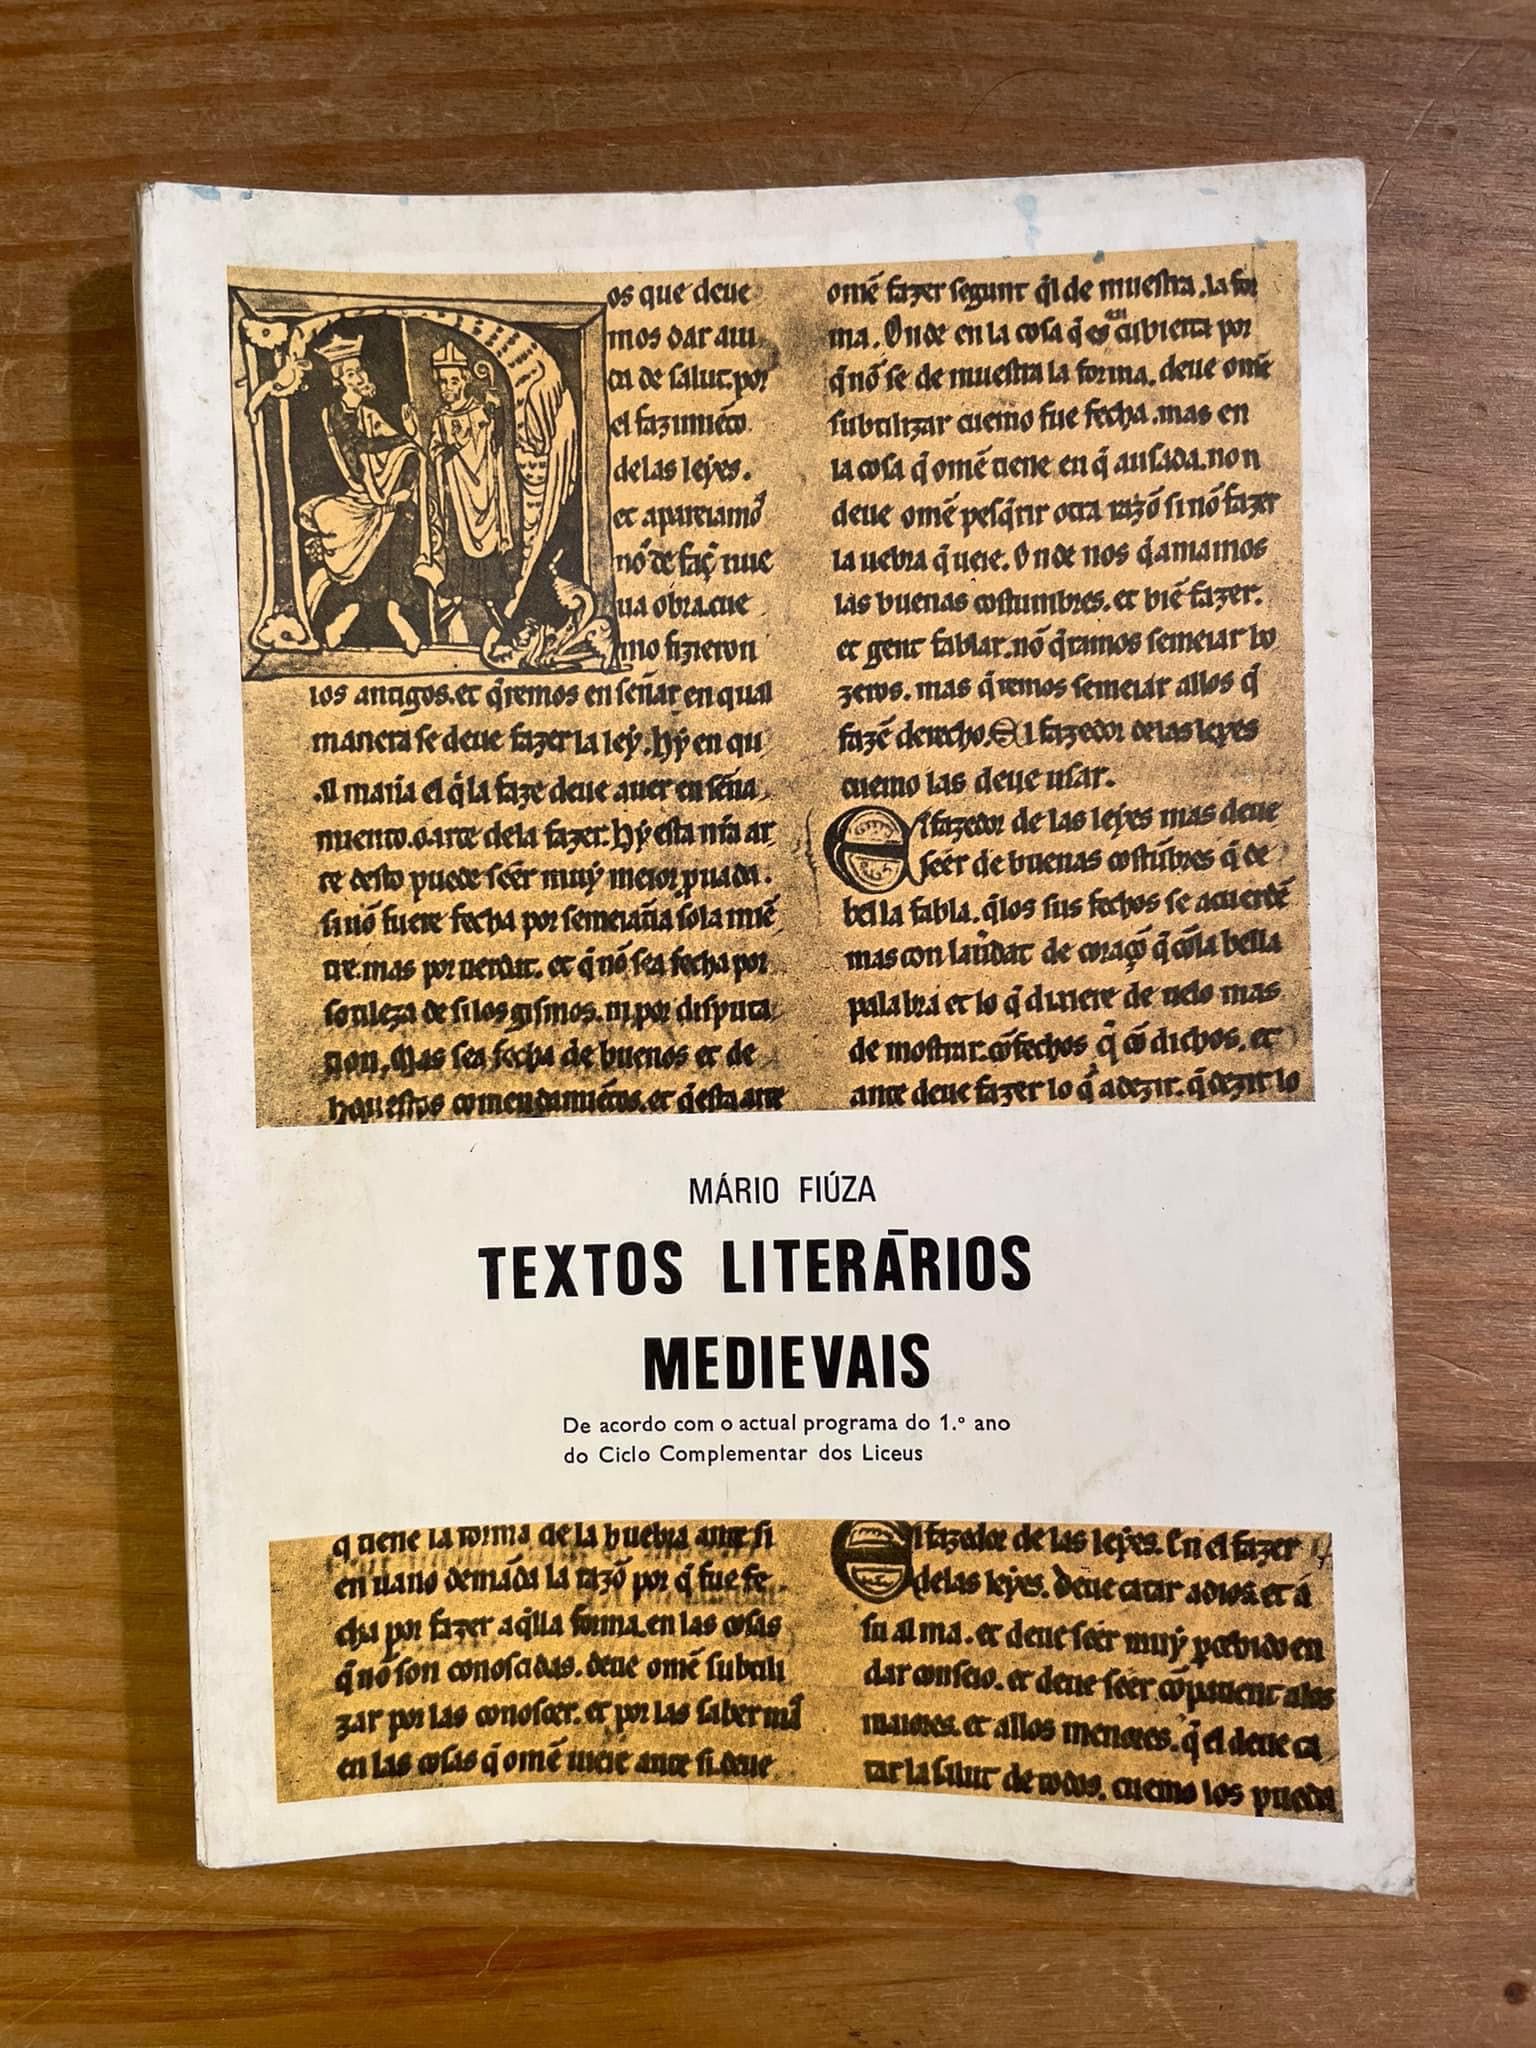 Textos Literários Medievais - Mário Fiuza (portes grátis)